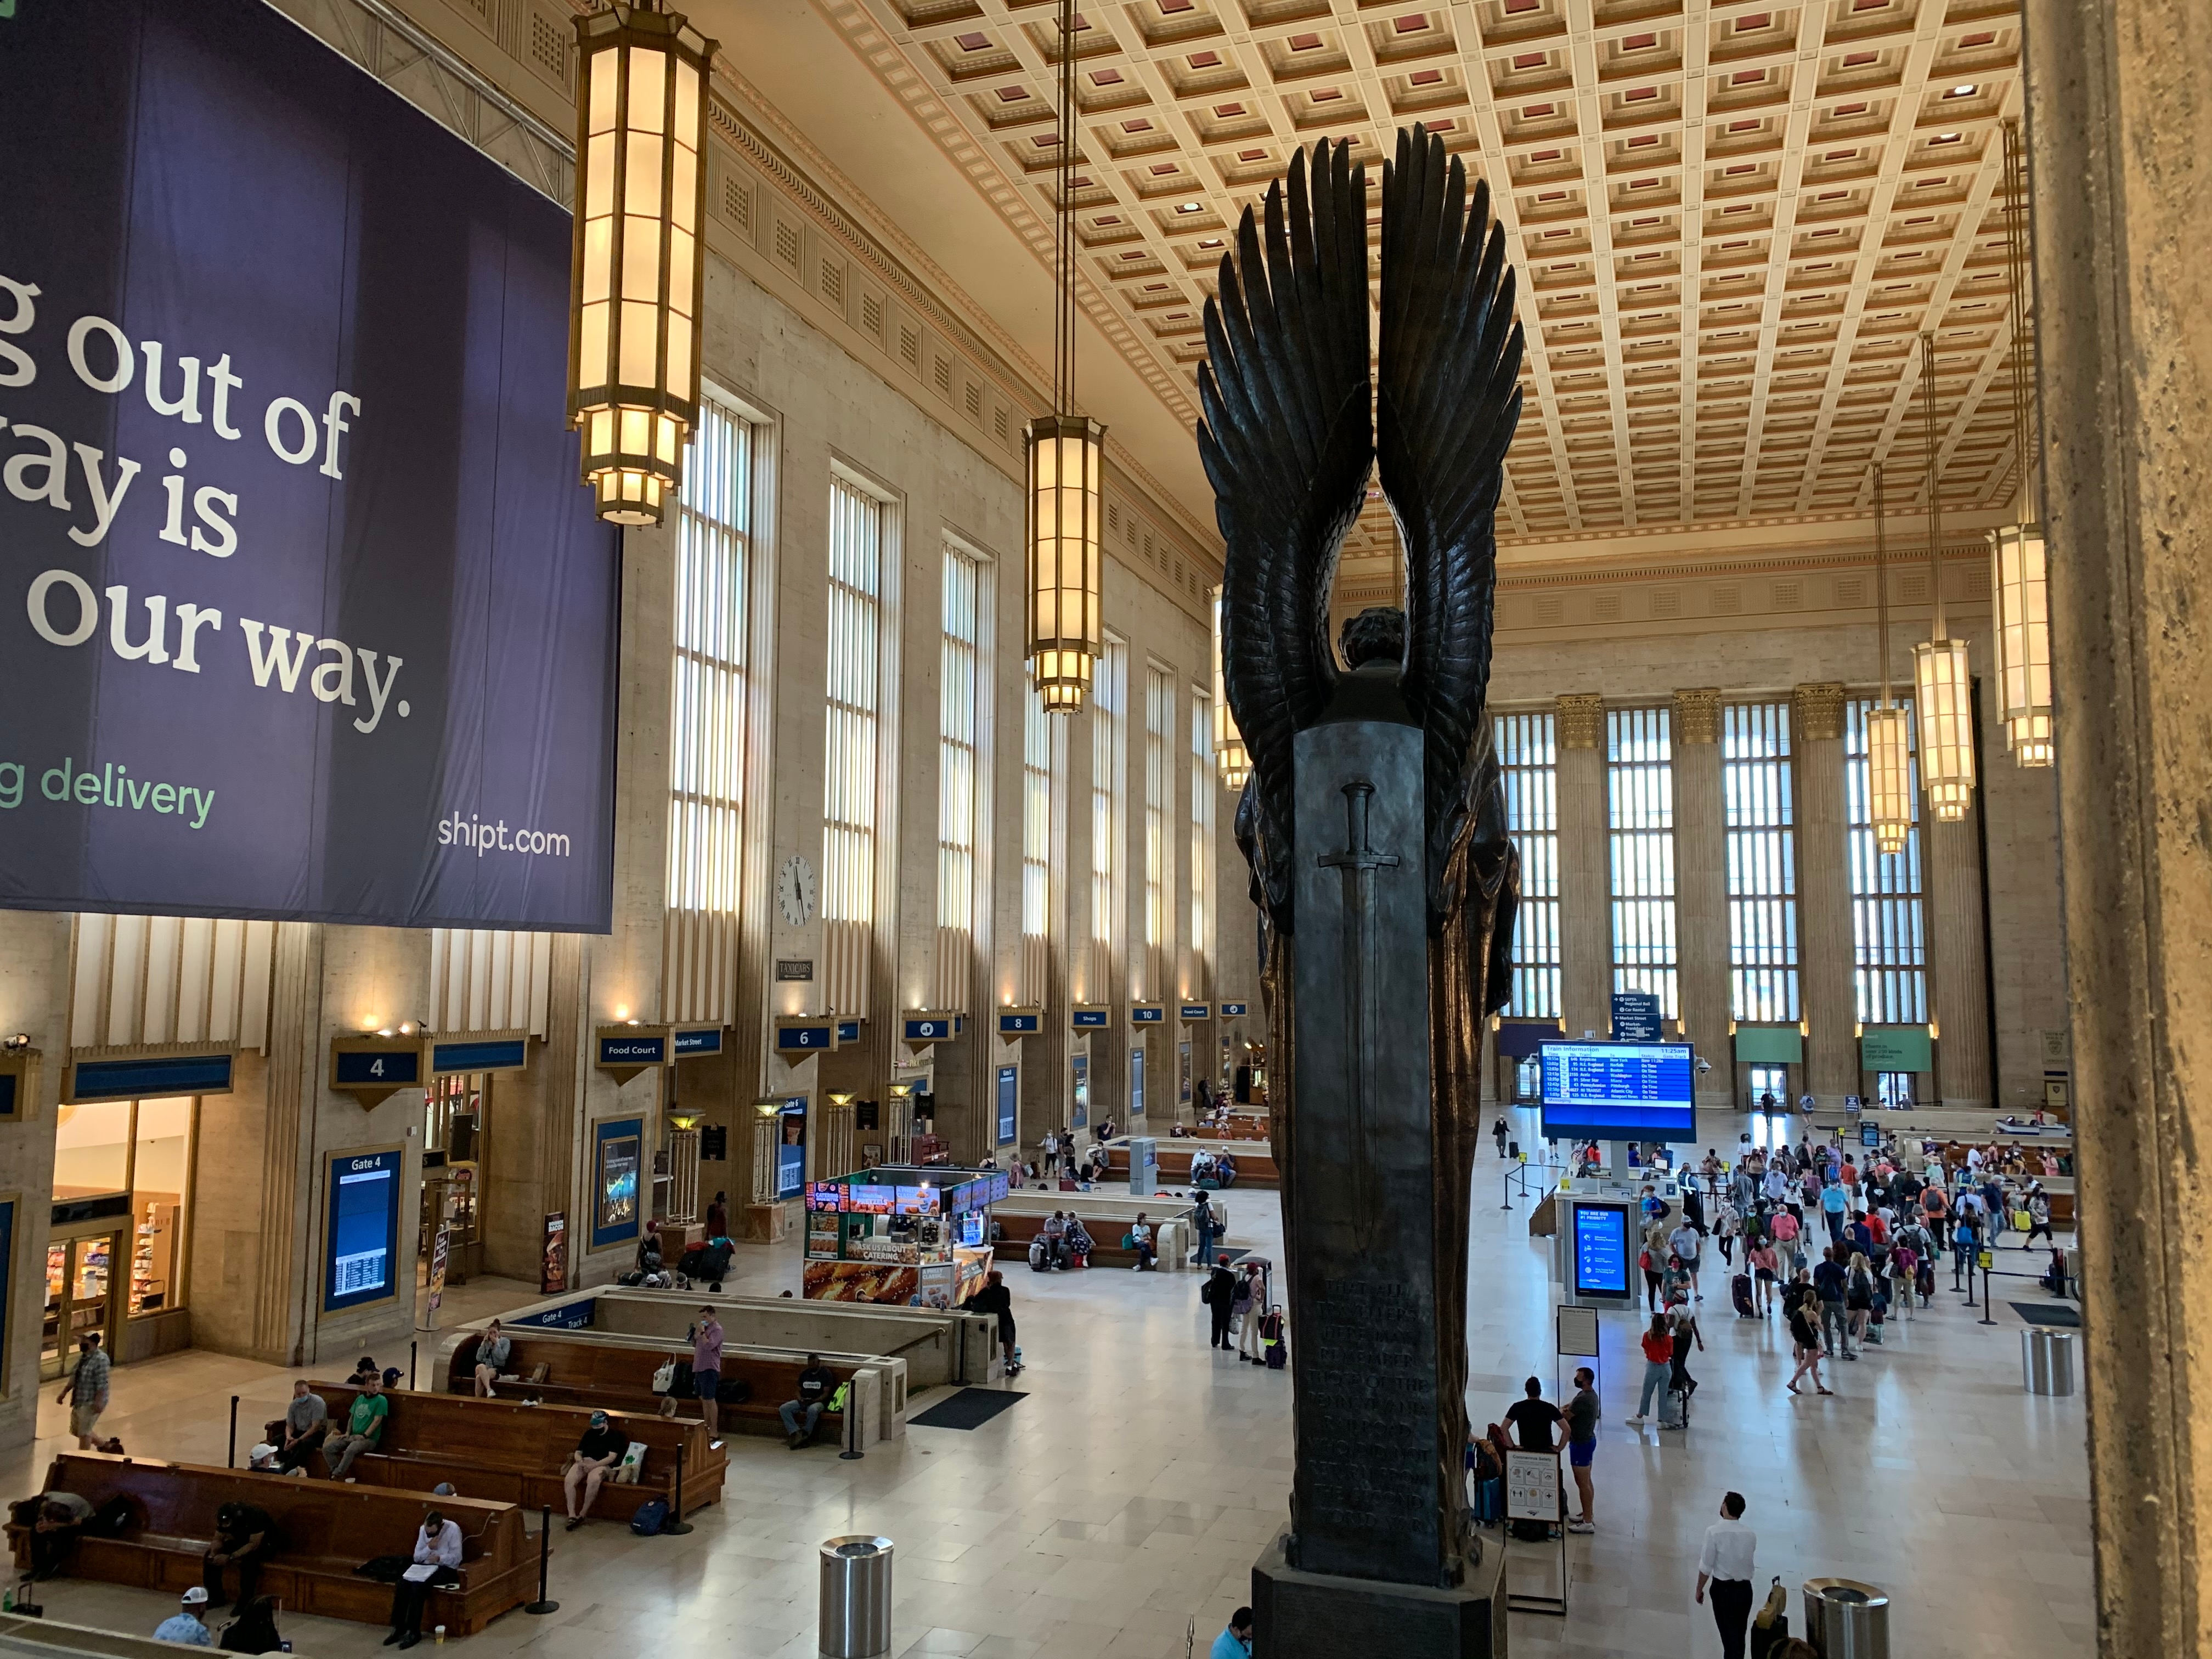 Vista interior de la Amtrak Philadelphia 30th Street Station